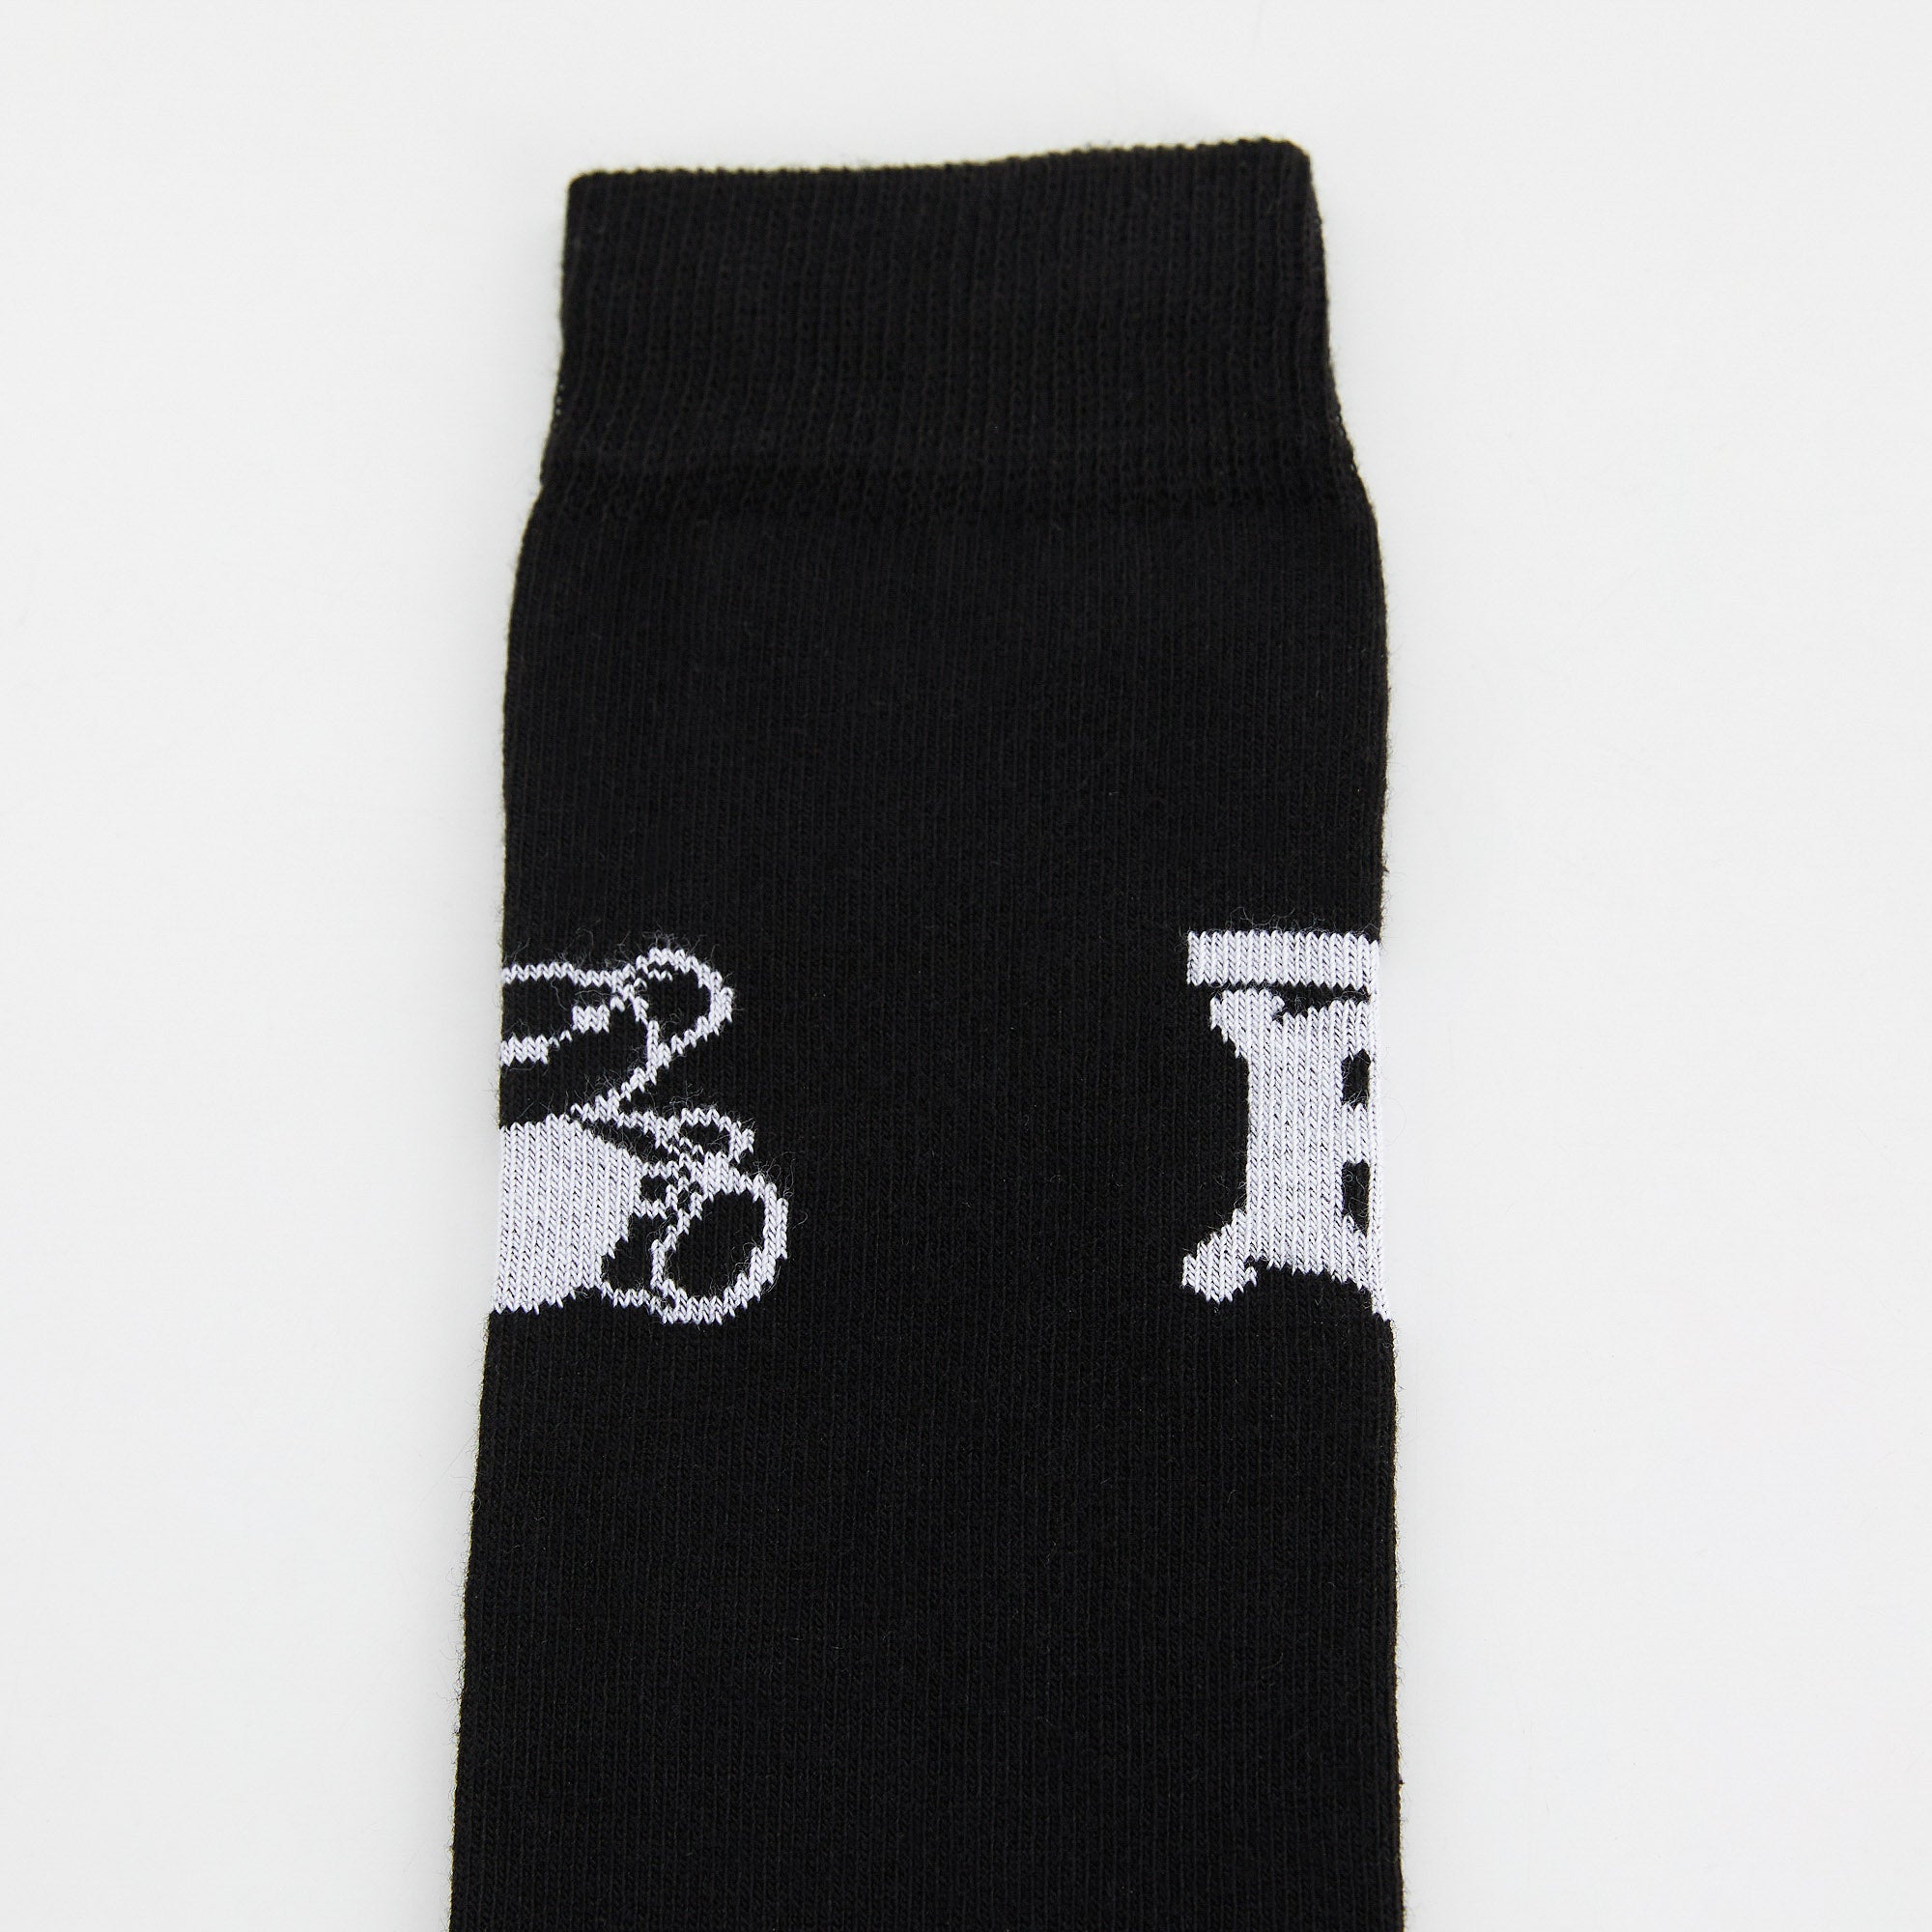 Boys & Girls Black Cotton Socks(2 Pack)